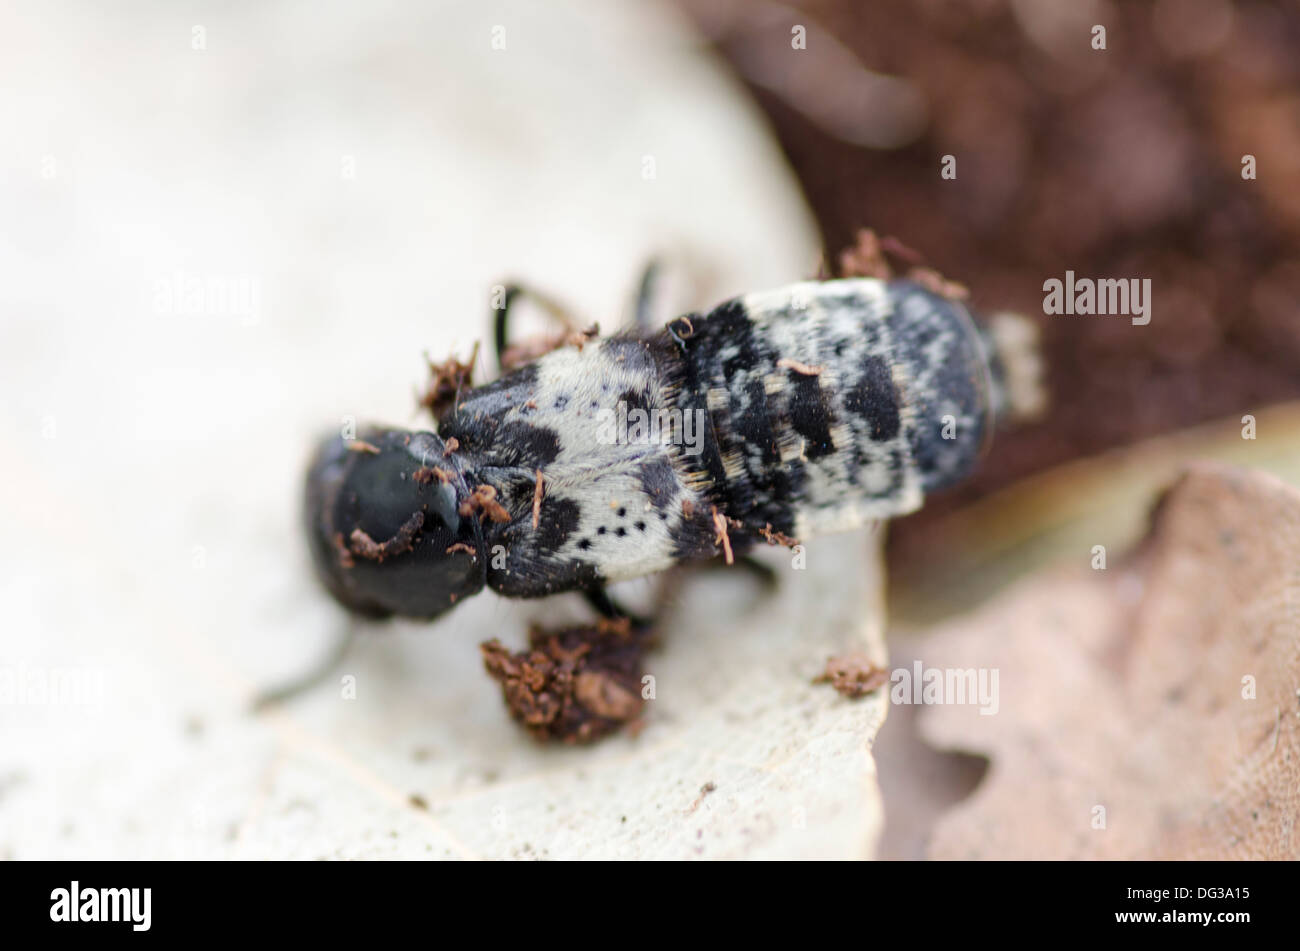 Creophilus maxillosus, rove beetle. Stock Photo